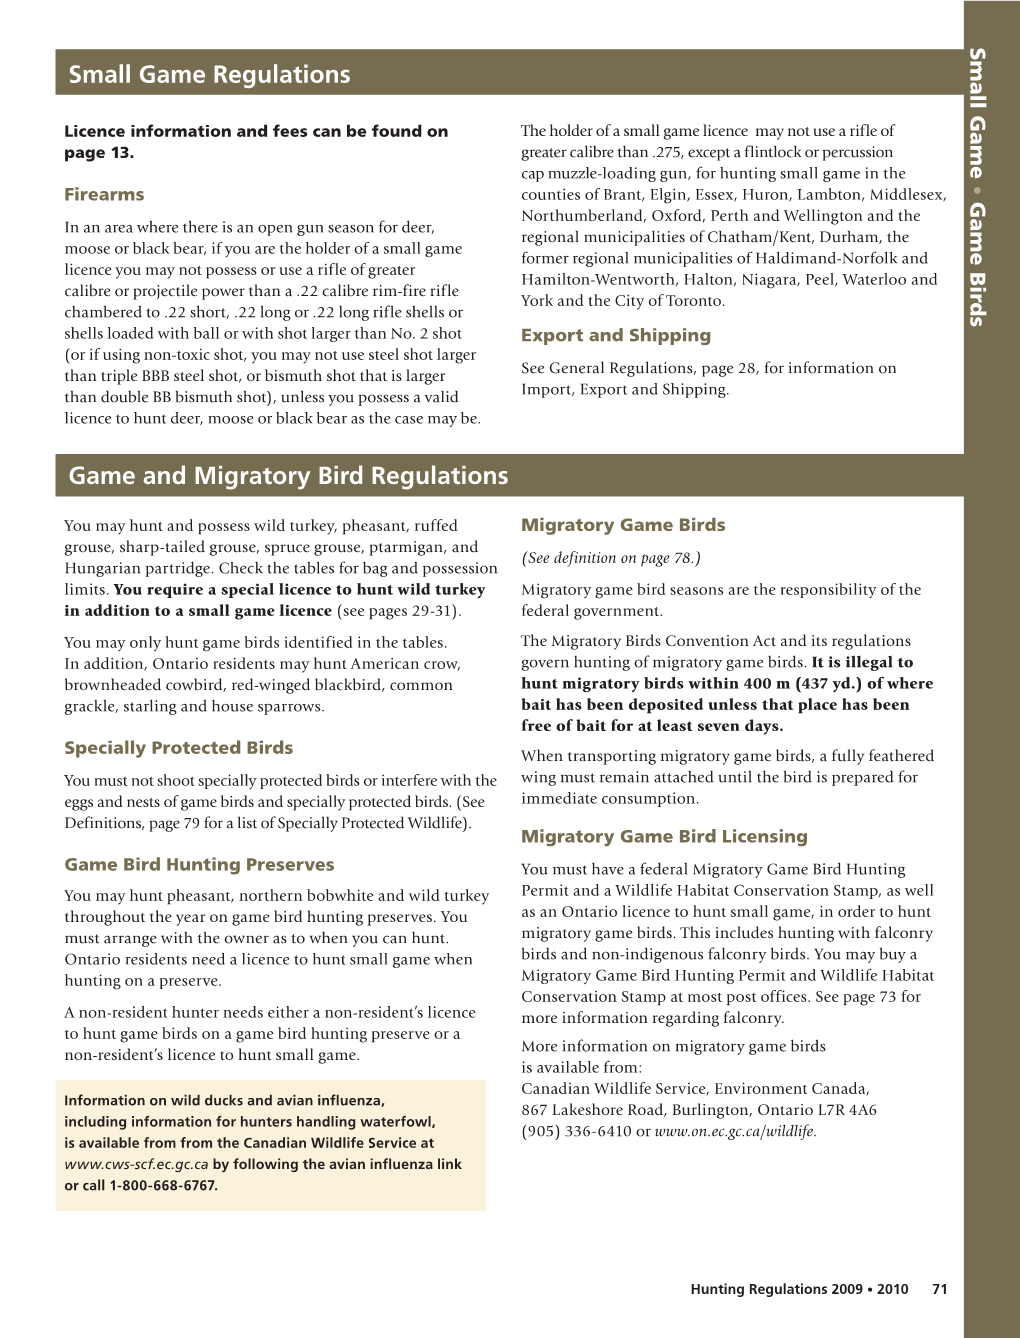 2009 Ontario Hunting Regulations Summary